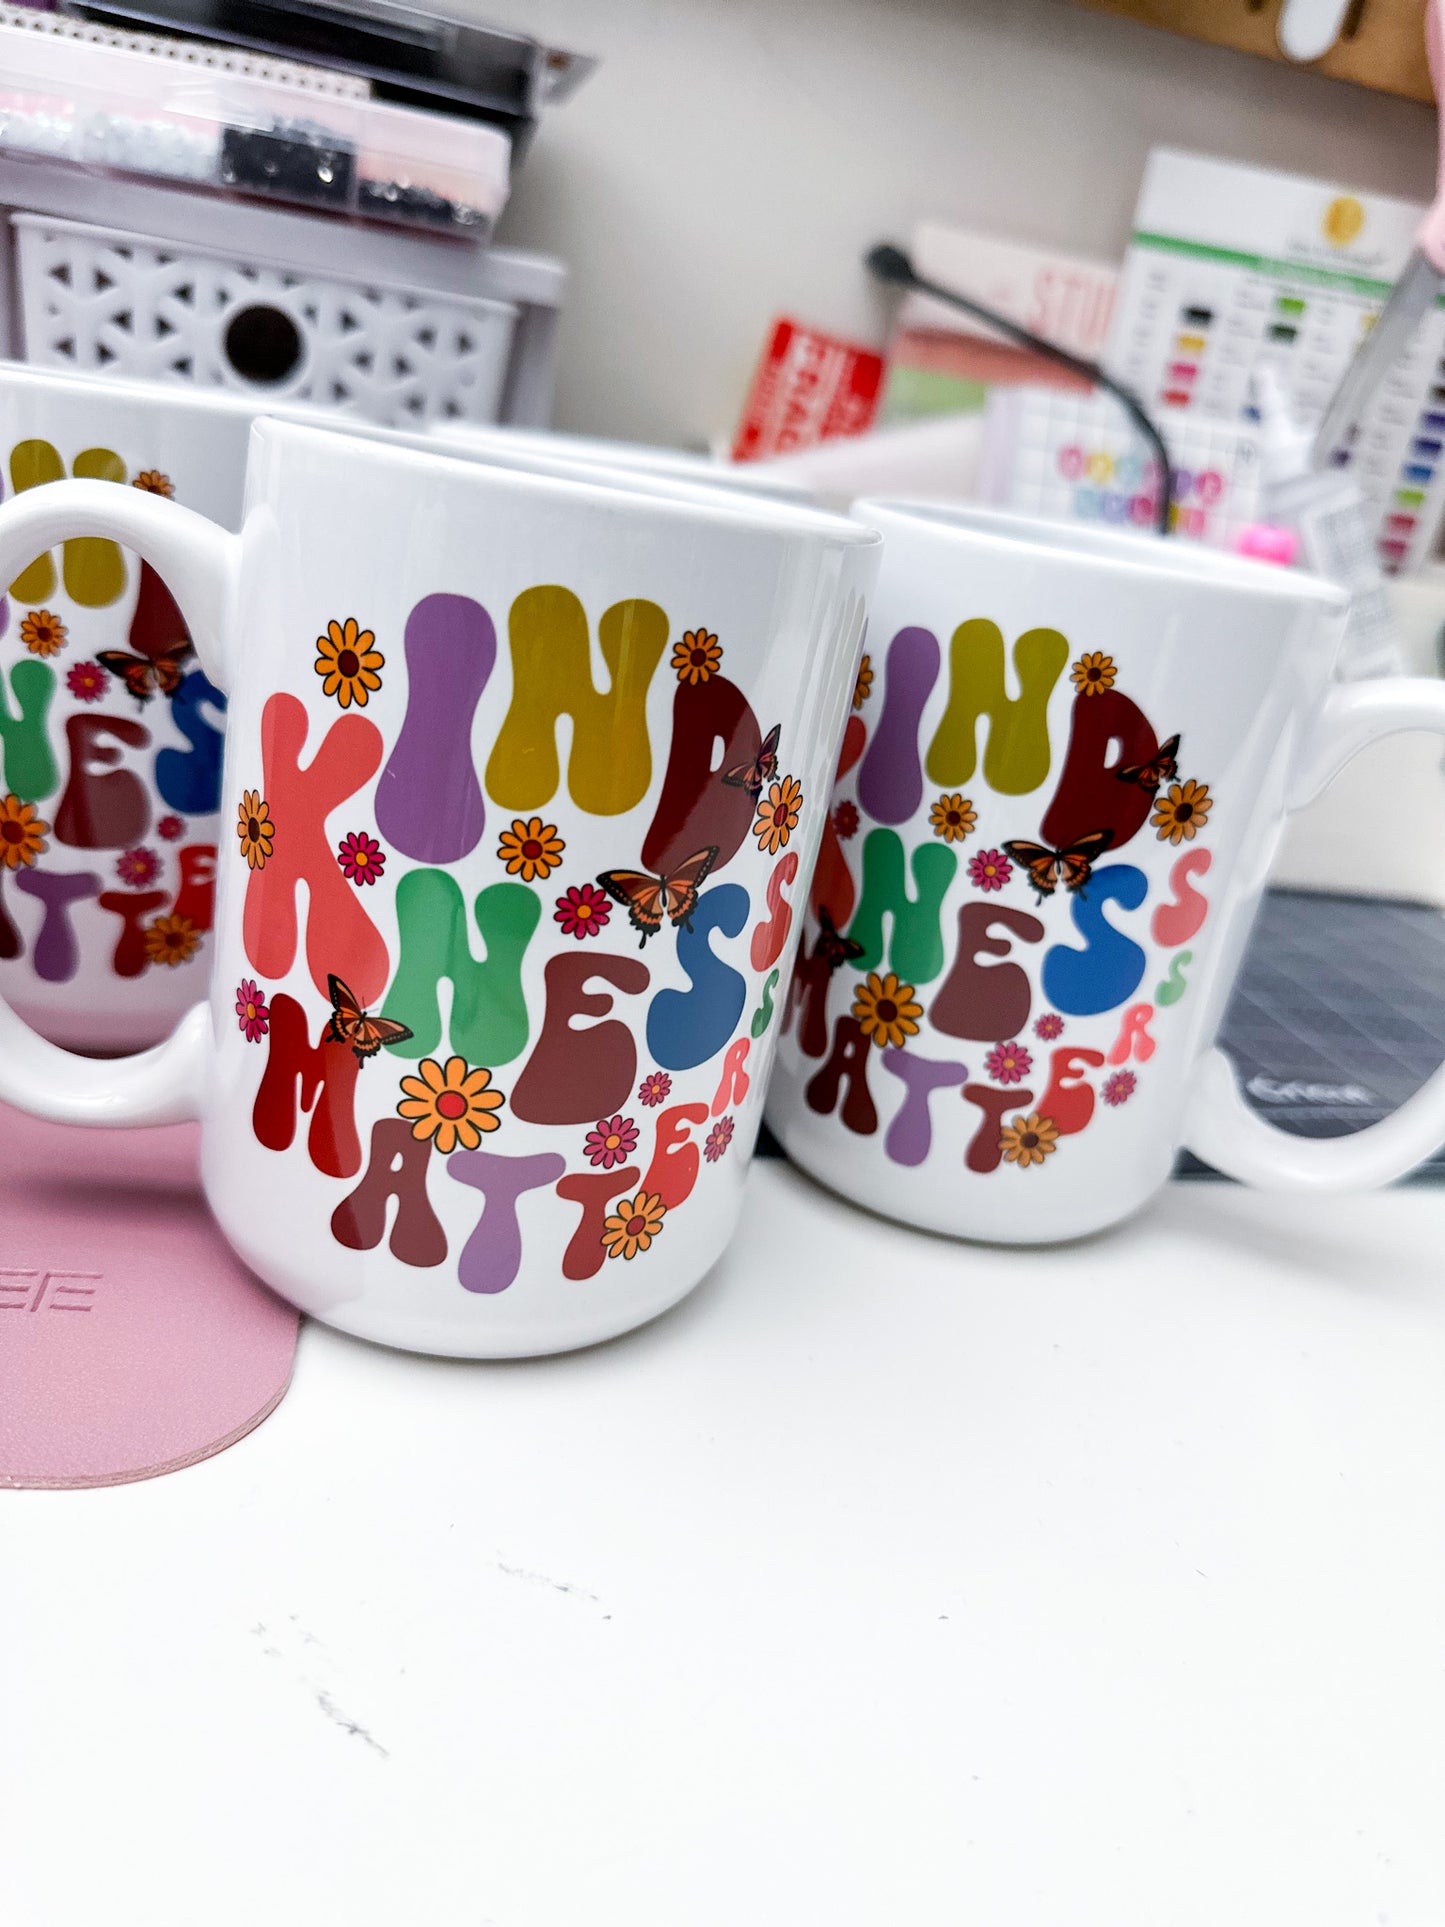 Kindness Matters oversized mug